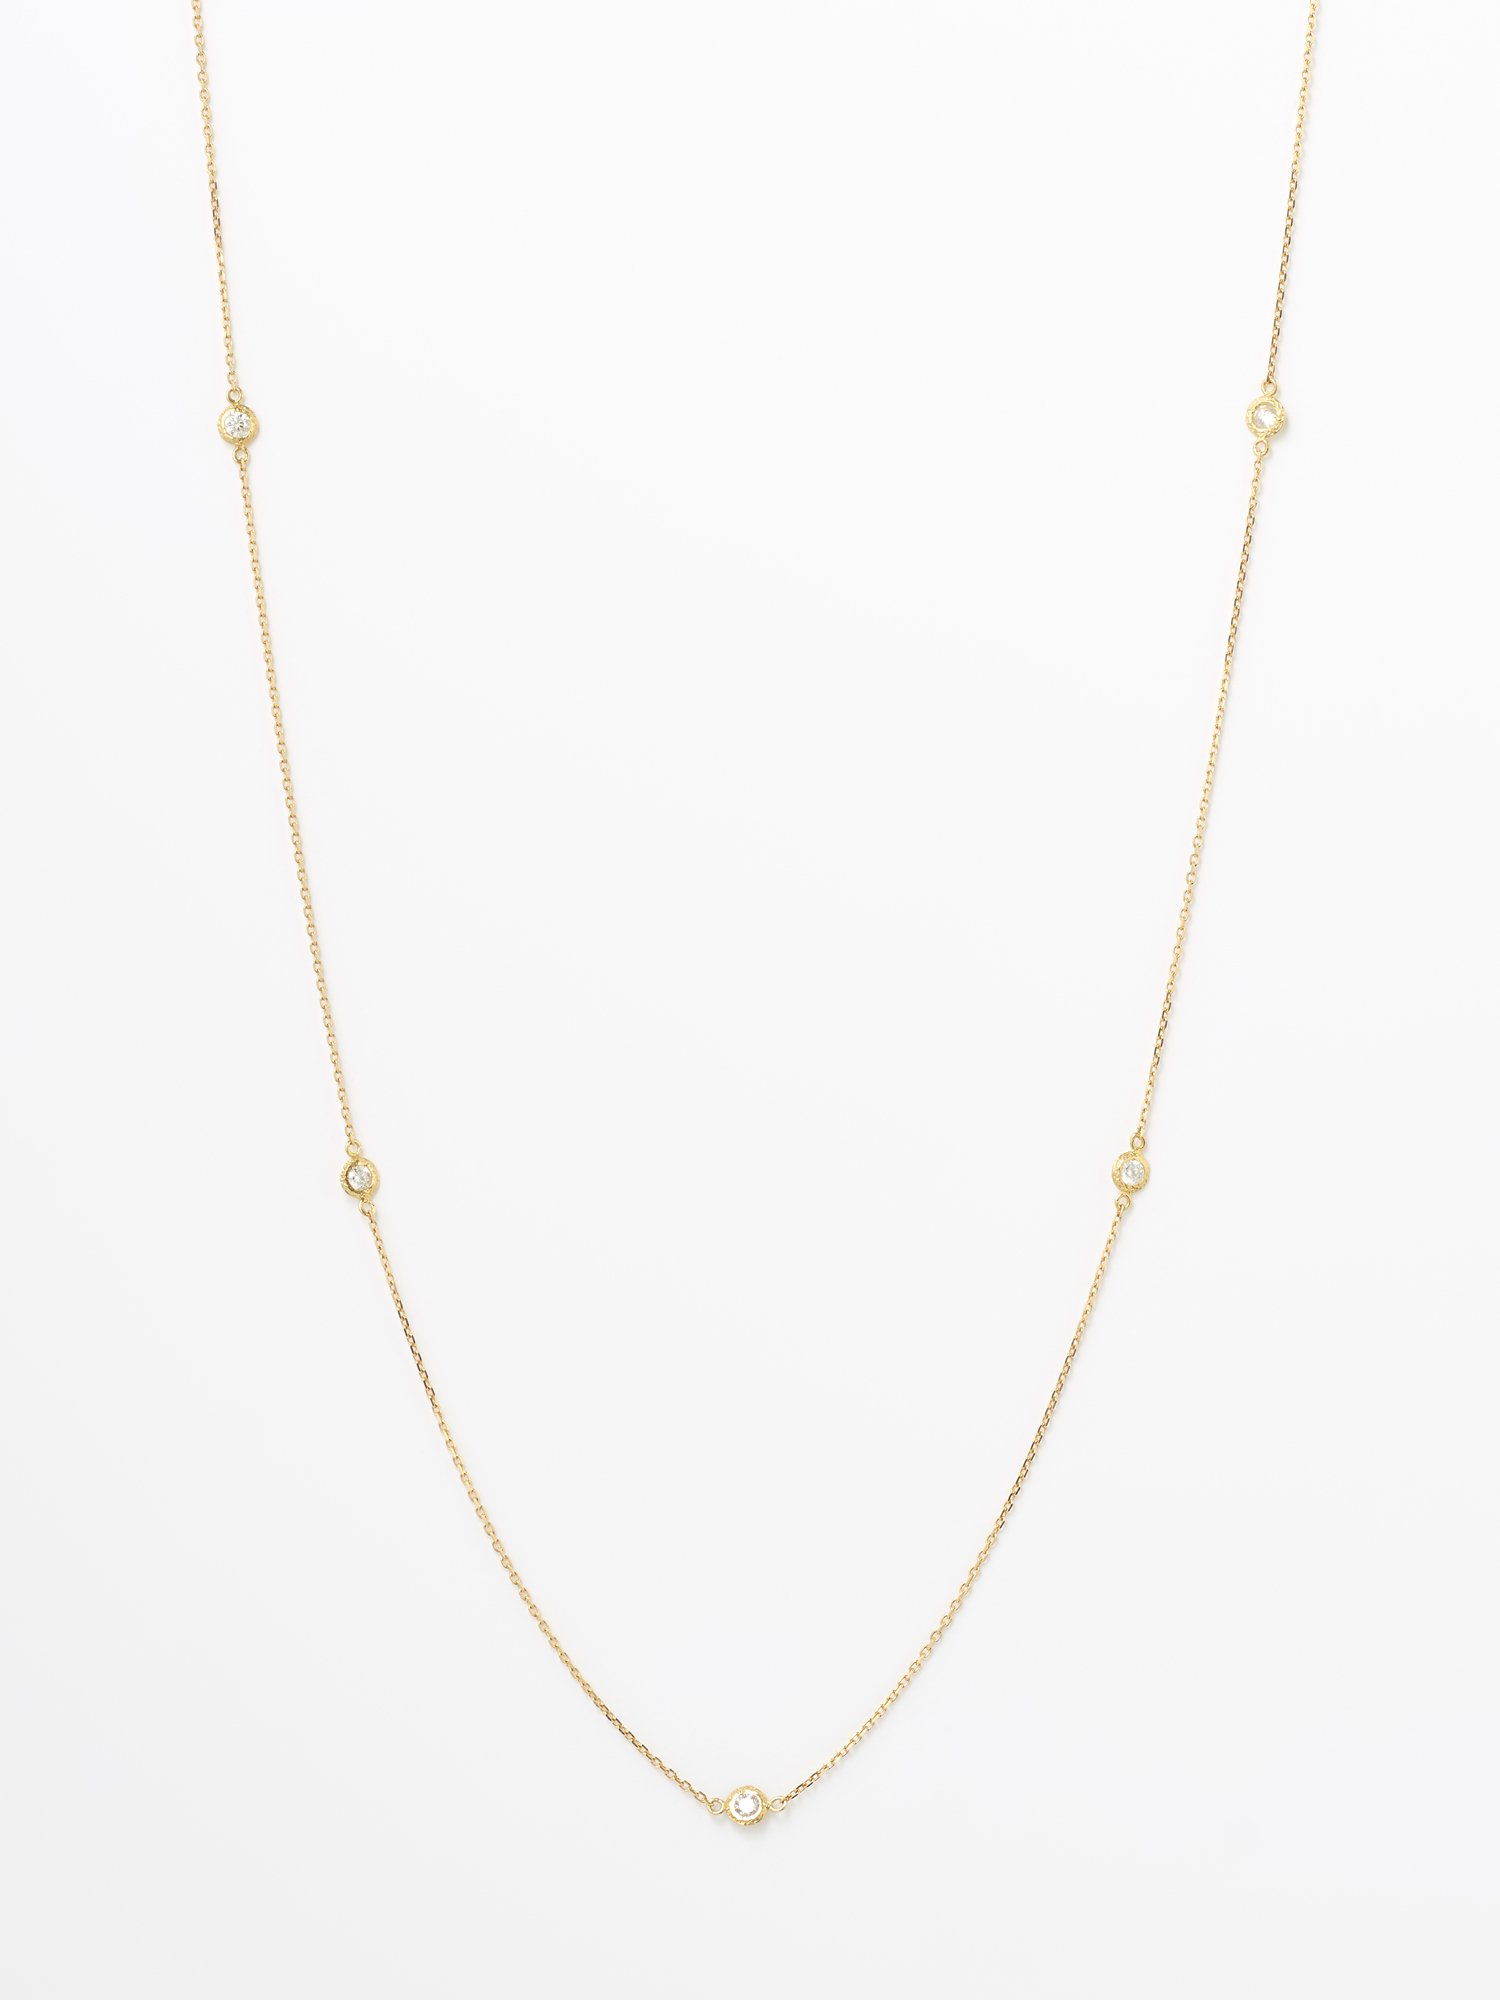 HISPANIA / Dew short necklace / Diamond - GIGI Jewelry